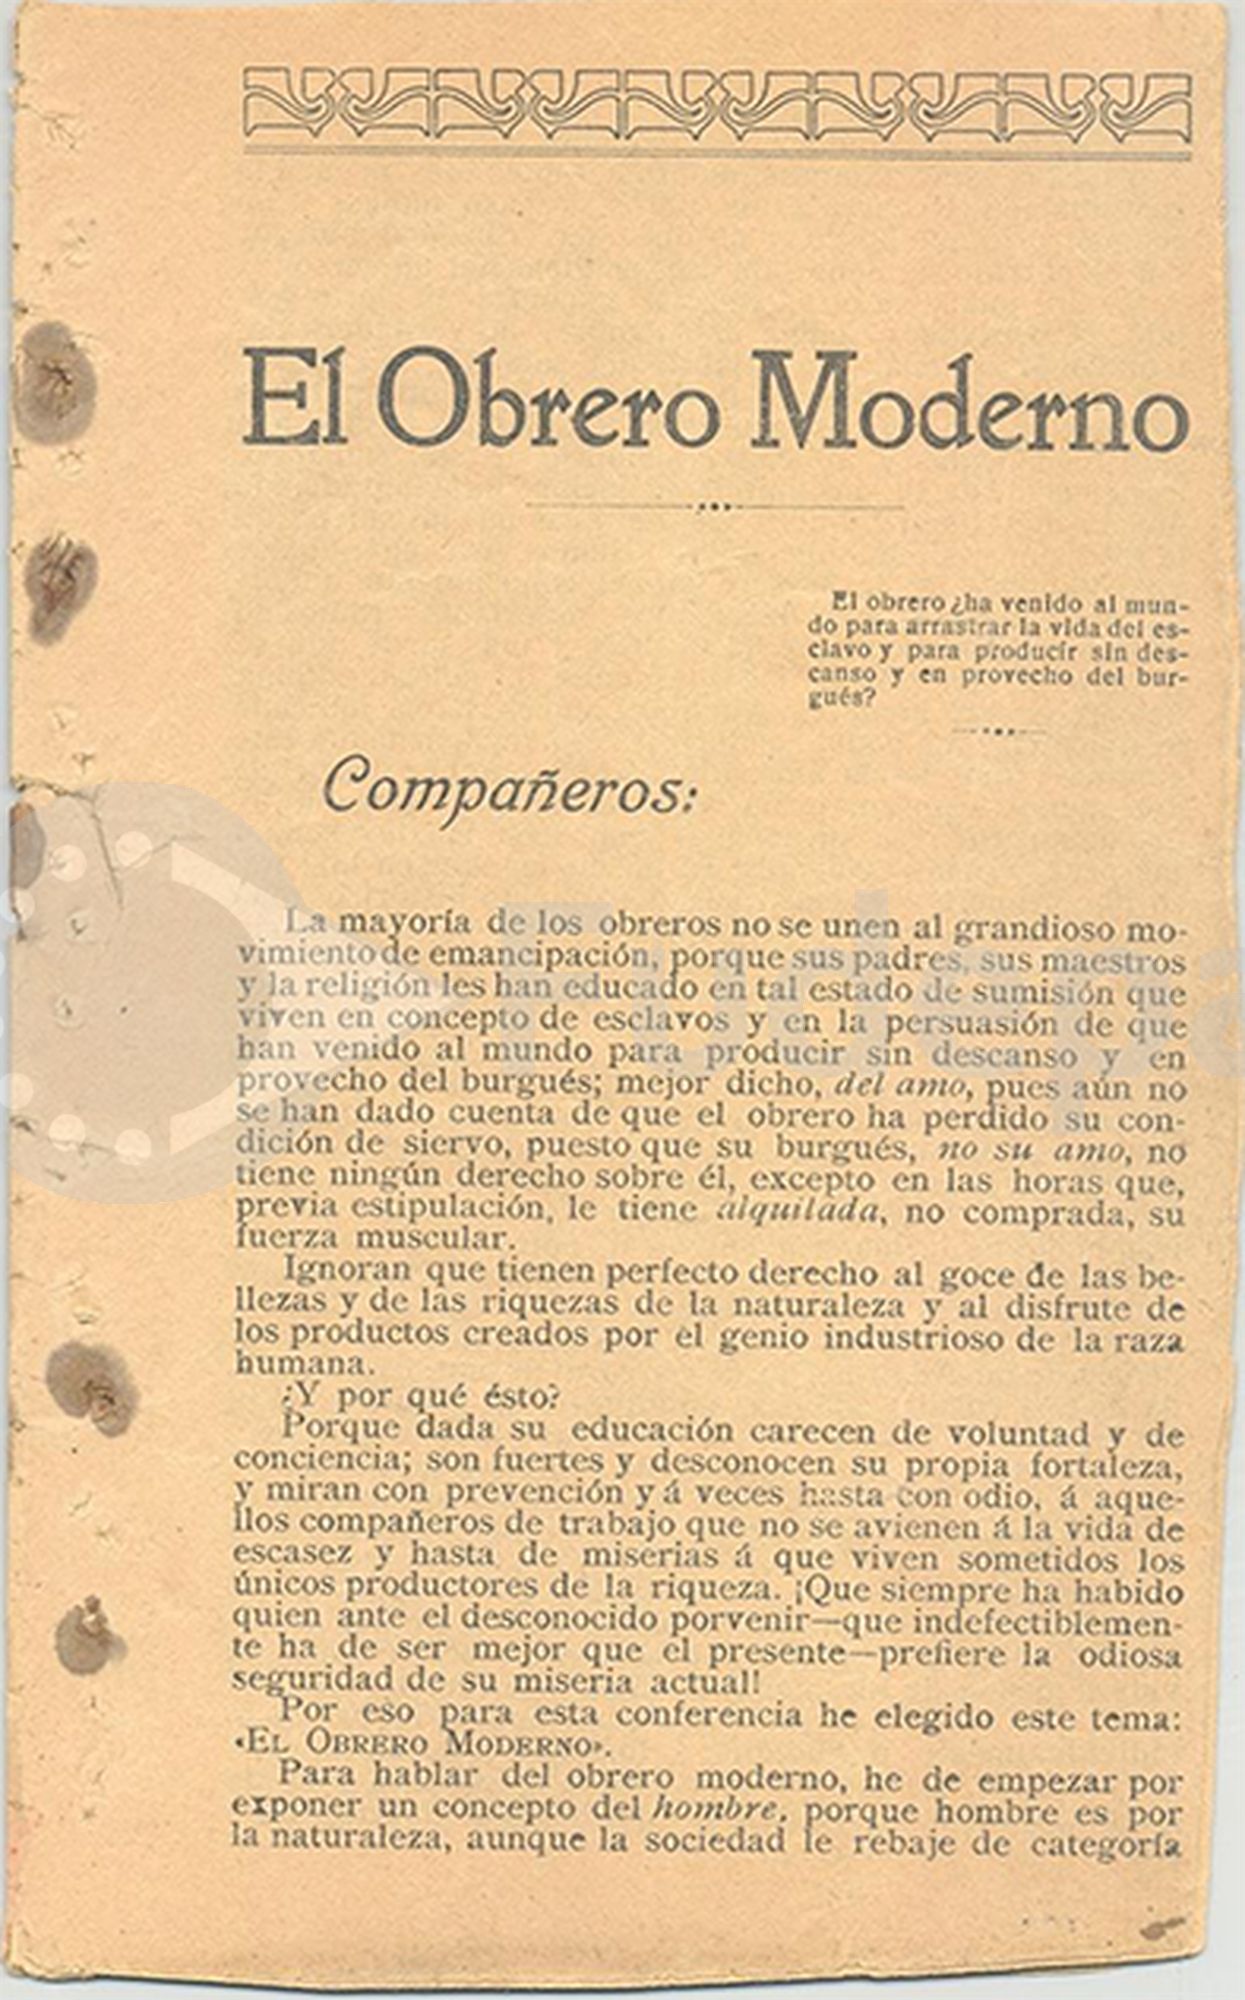 El obrero moderno. Conferencia de Tomás Herreros, dirigente anarcosindicalista y tipógrafo. [1911]. Donado por Rafaela Sanz Hucha. FUDEPA. AHUGT-A: 12876.38